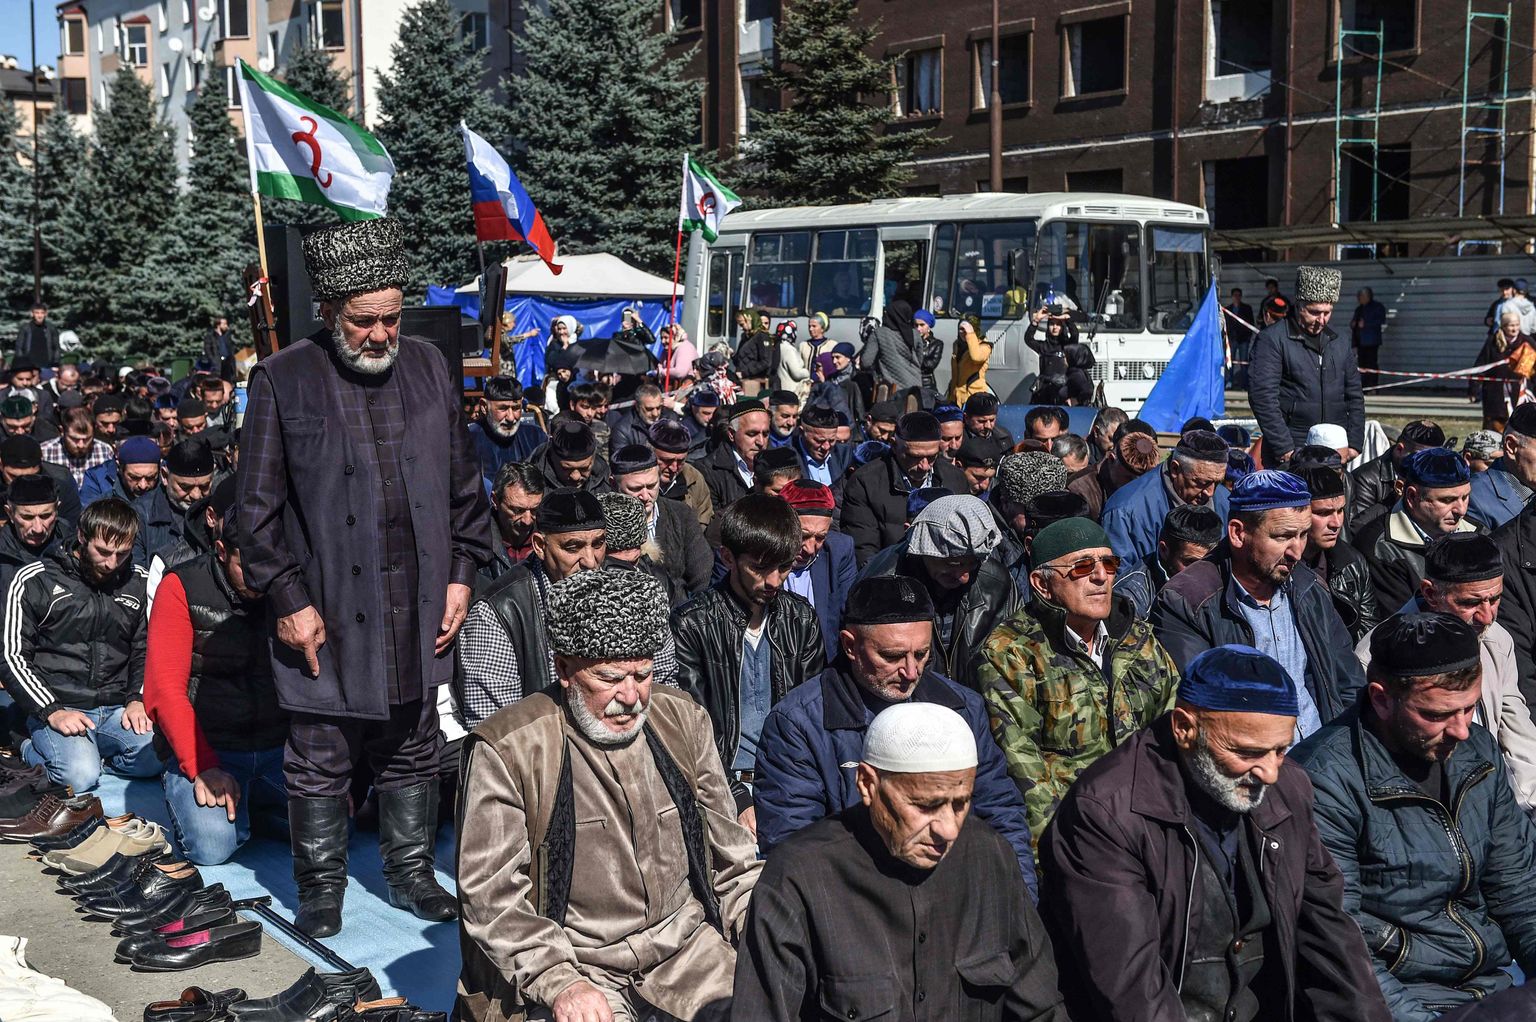 Ingušijas protestētāji lūdzas protesta akcijā pret jauno zemes maiņas darījumu starp Ingušiju un Čečeniju 2018. gada 7. oktobrī Ingušijas galvaspilsētā Magasā.